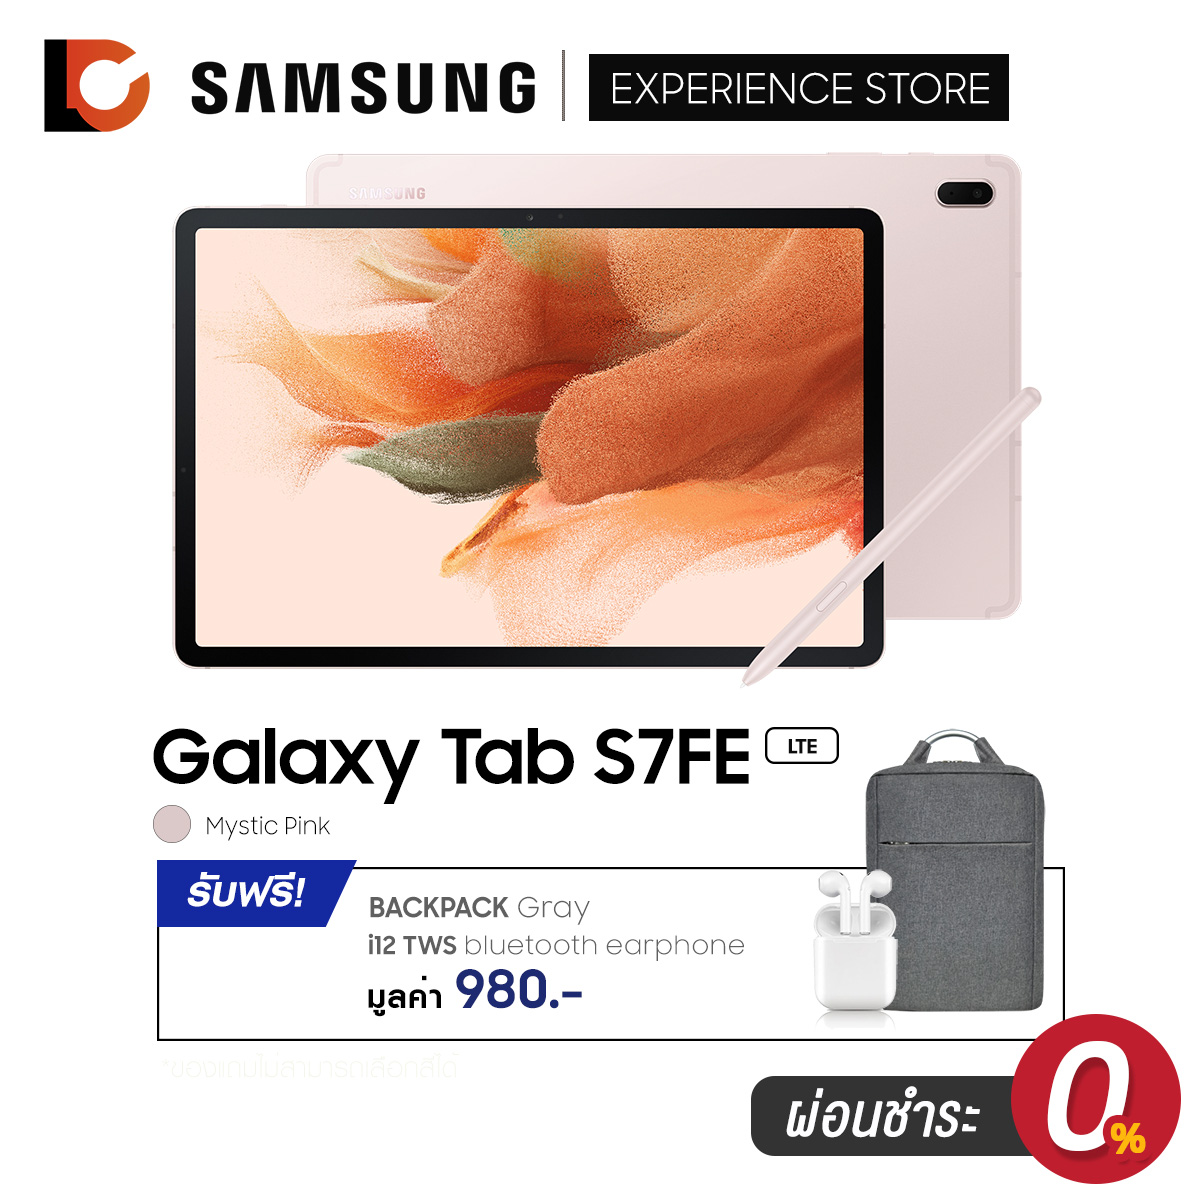 SAMSUNG Galaxy Tab S7 FE ( LTE) (4+64GB) [รับฟรีของสมณาคุณ มูลค่า 980 บาท] เครื่องศูนย์ไทย ประกัน 1 ปี